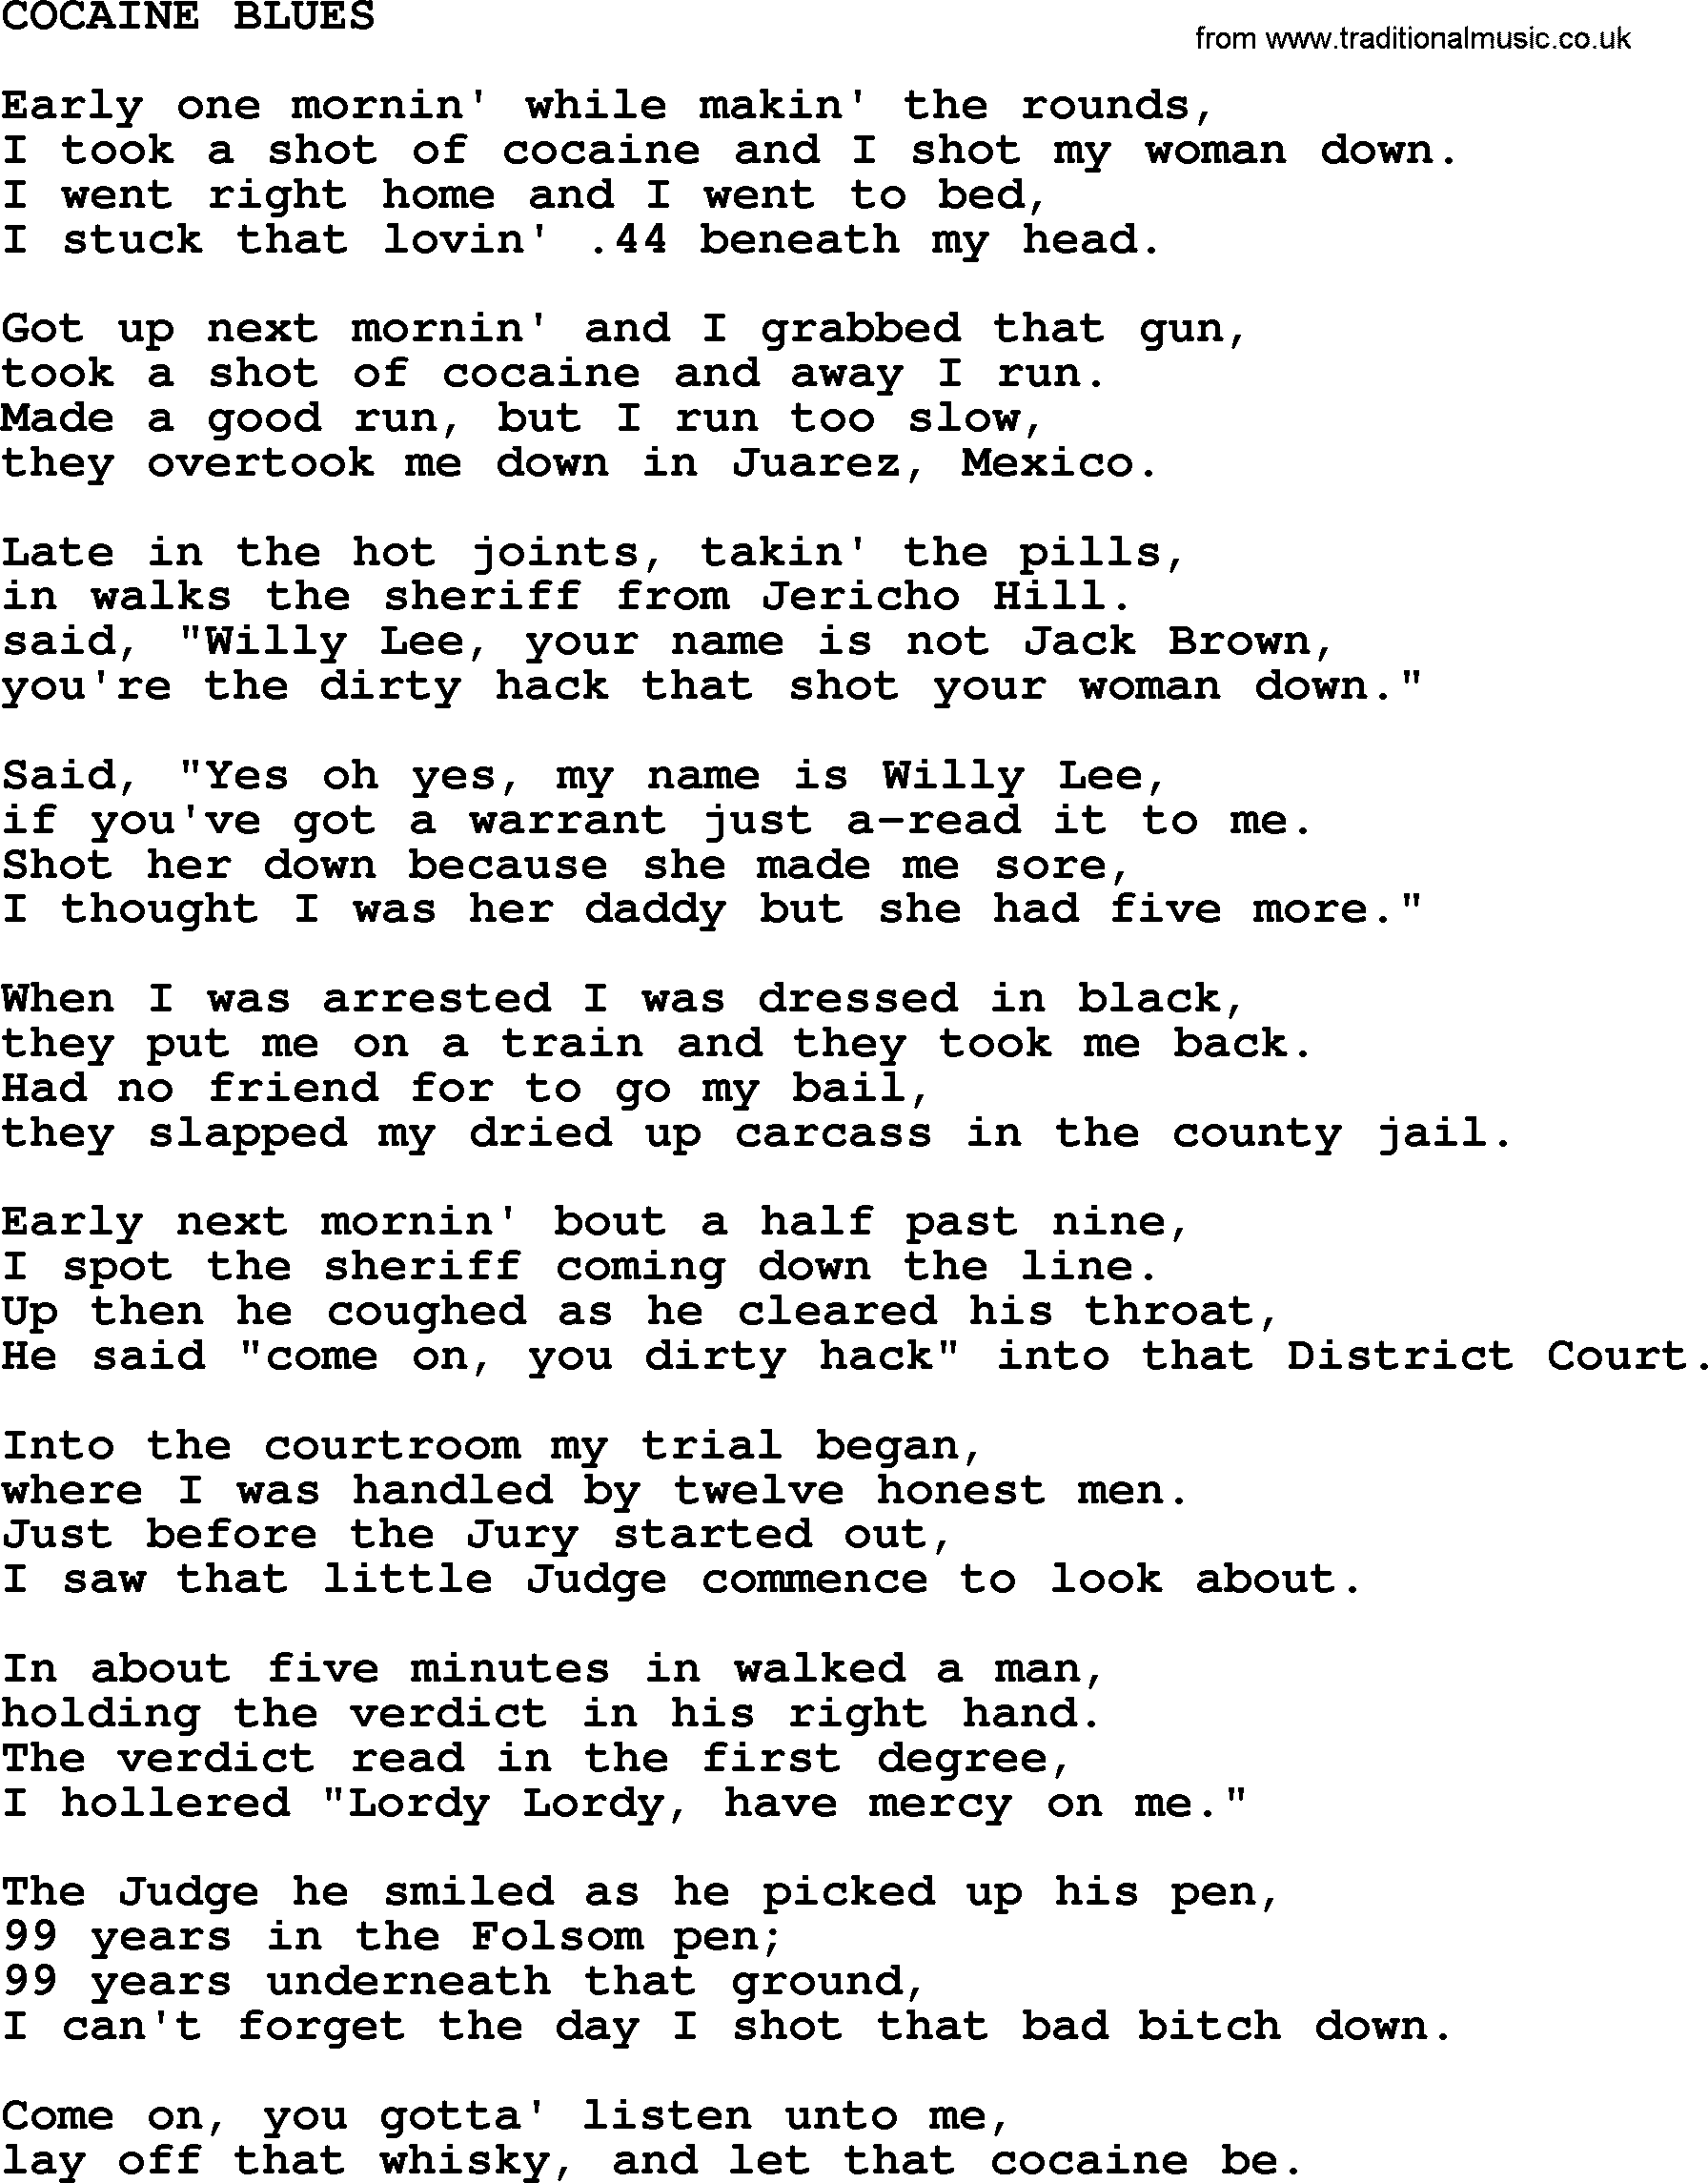 Johnny Cash song Cocaine Blues.txt lyrics